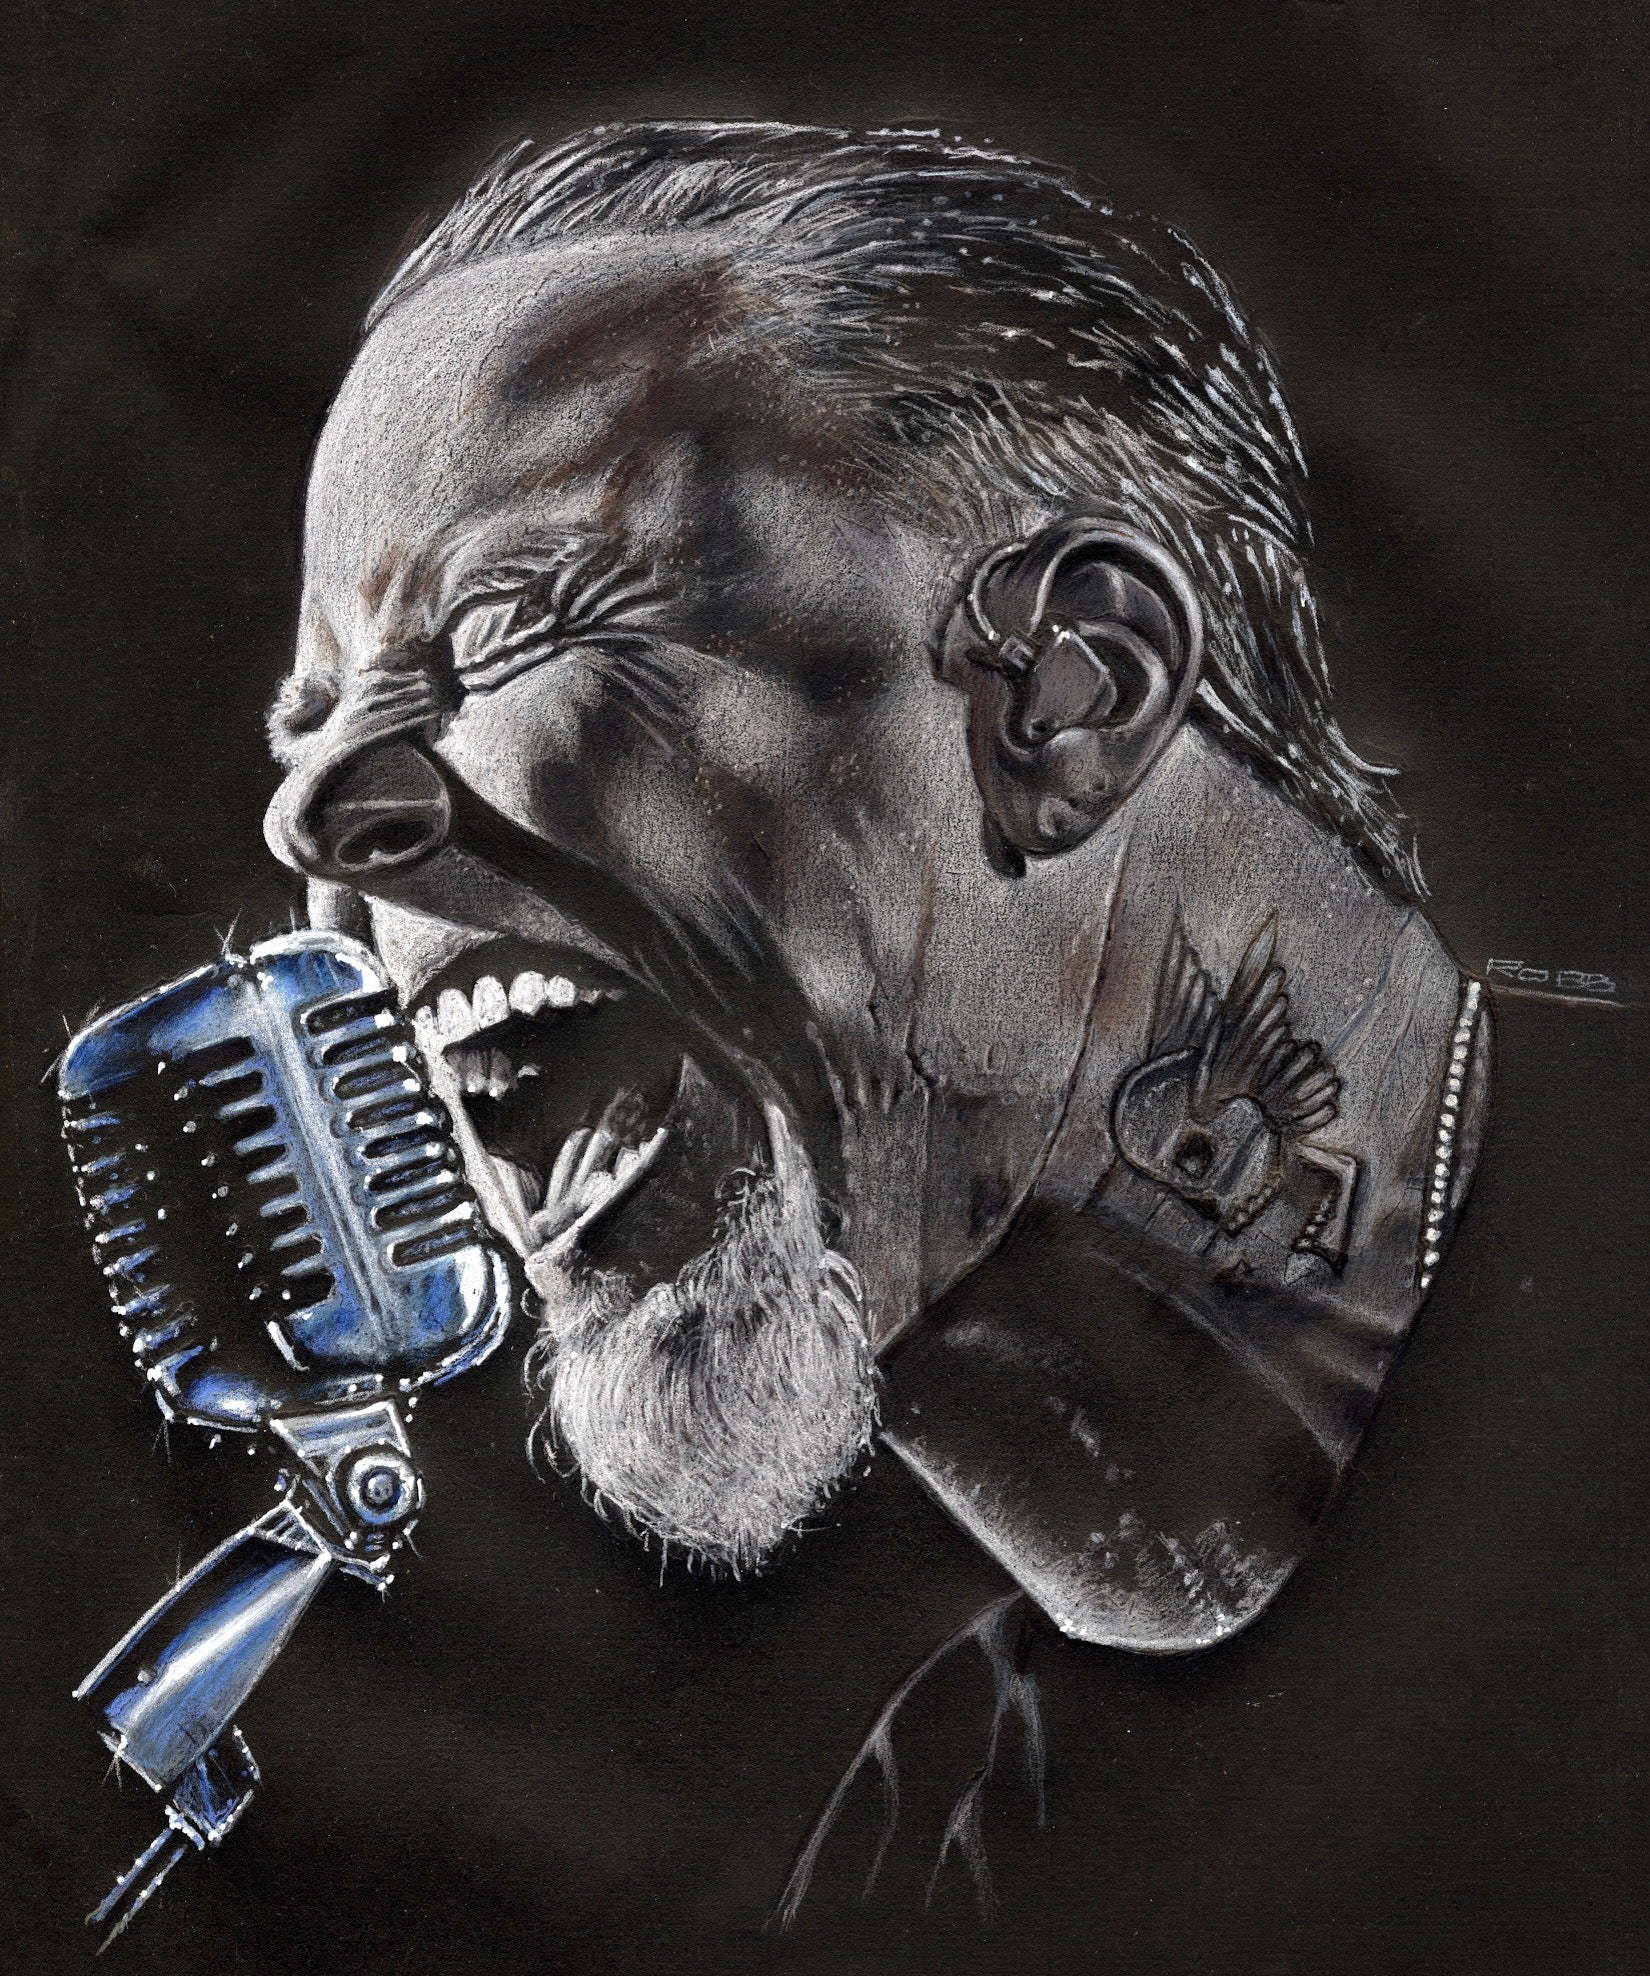 Drawing of James Hetfield singing